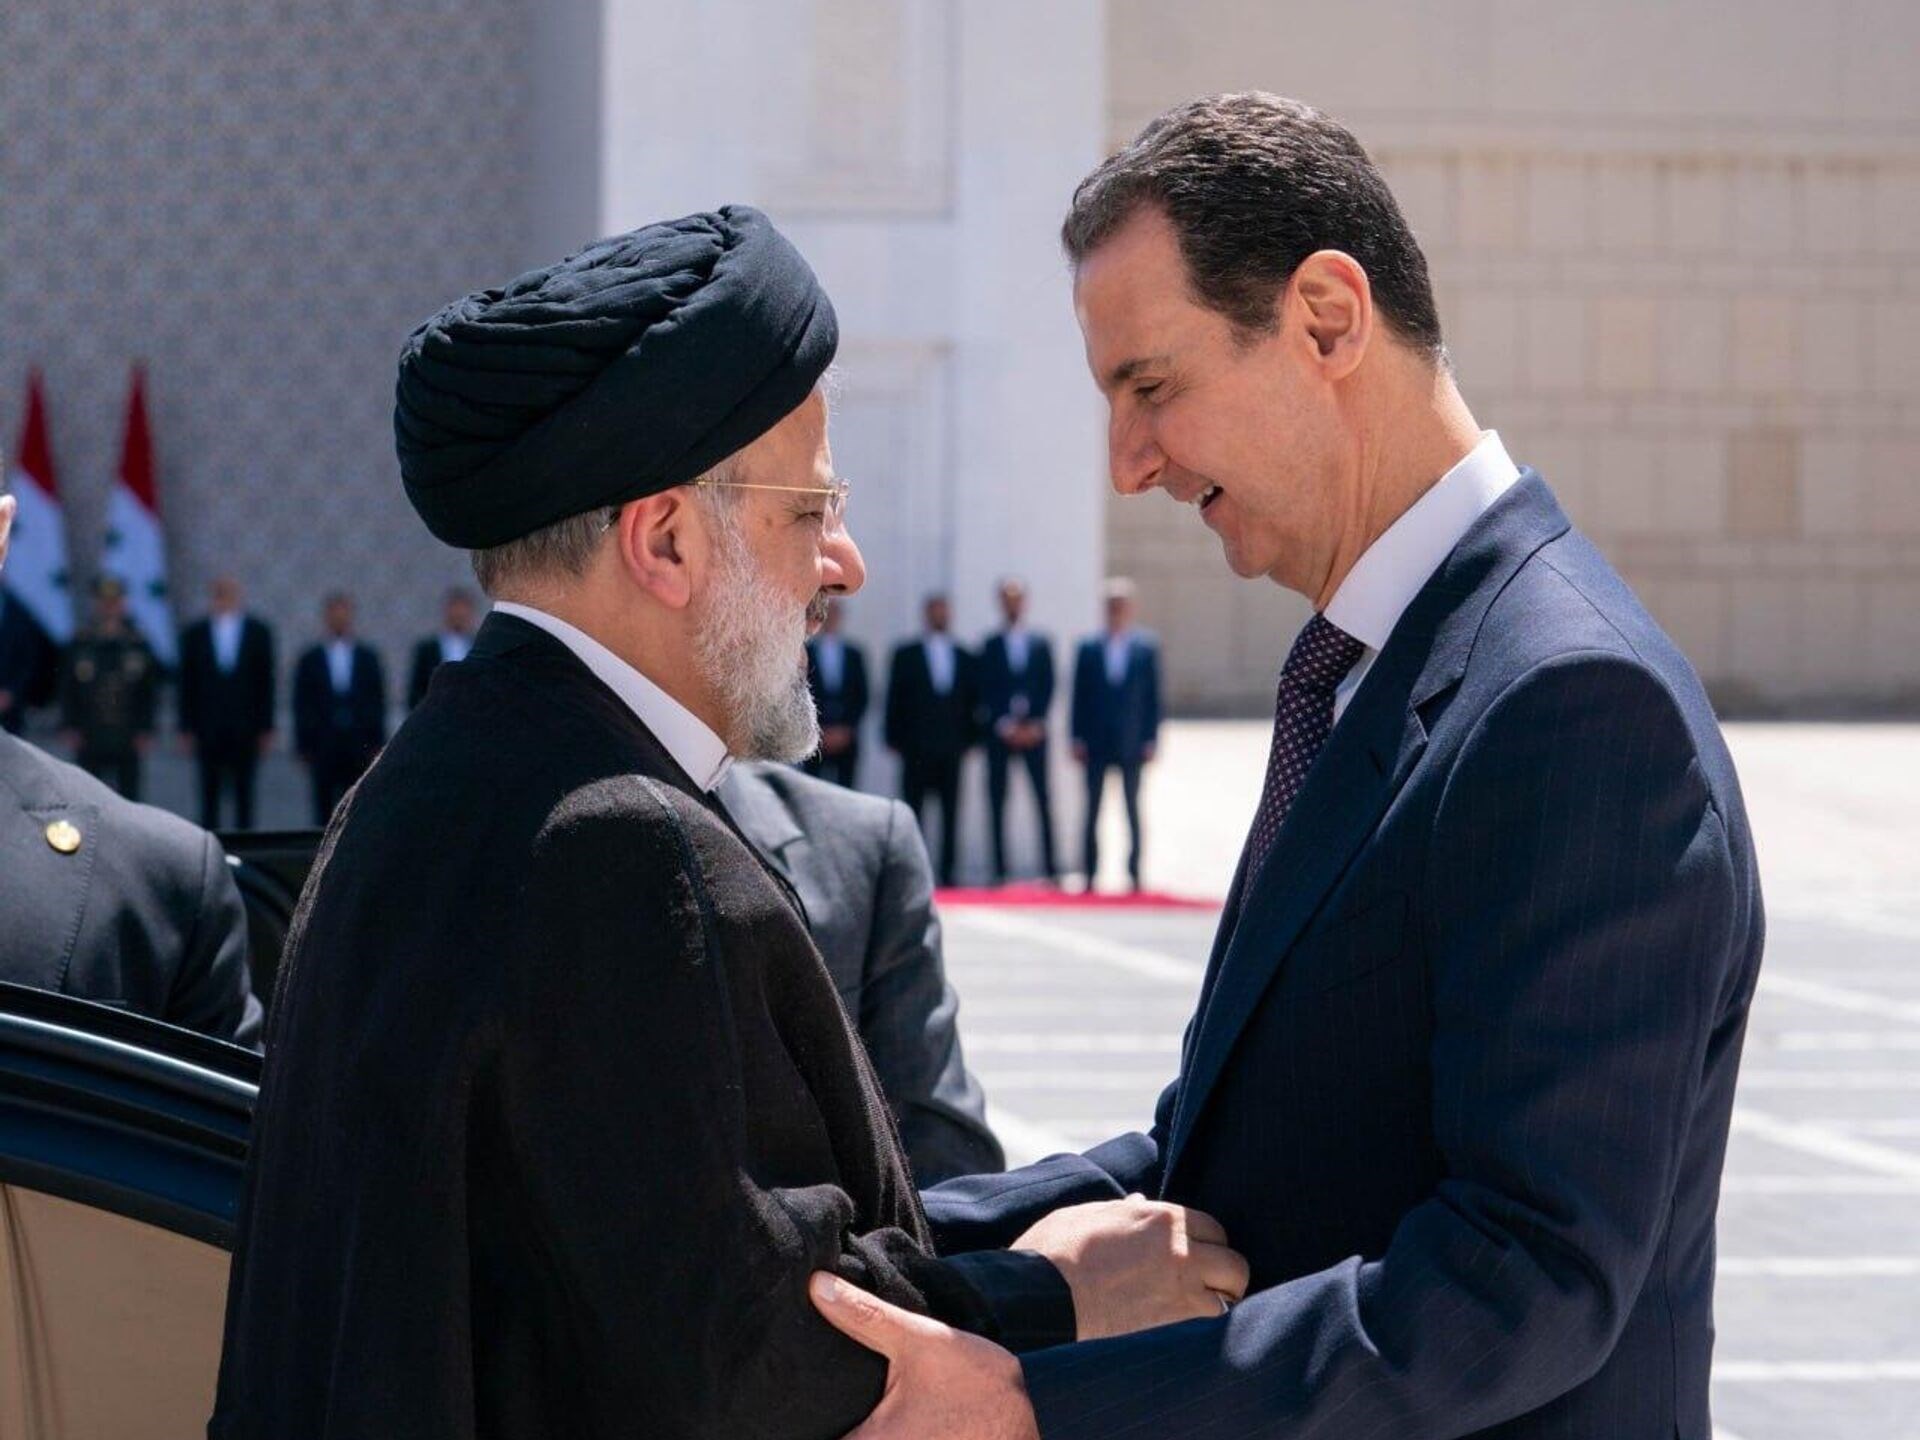 إعلام إسرائيلي: رئيسي يزور سوريا ورسالته .. انتصرنا وتحالفنا استراتيجي لا يُكسَر